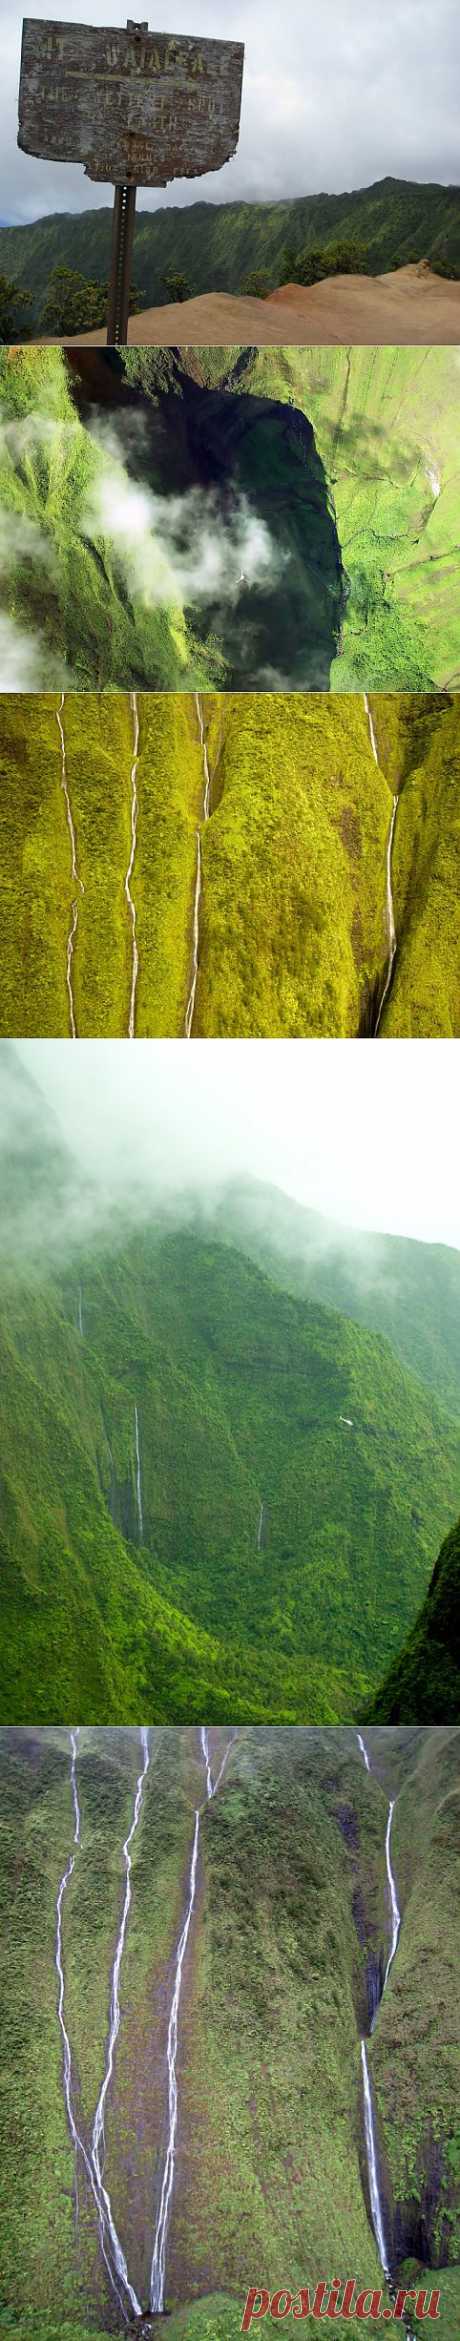 Водопад Хонокохау на Гавайях | ТУРИЗМ И ОТДЫХ